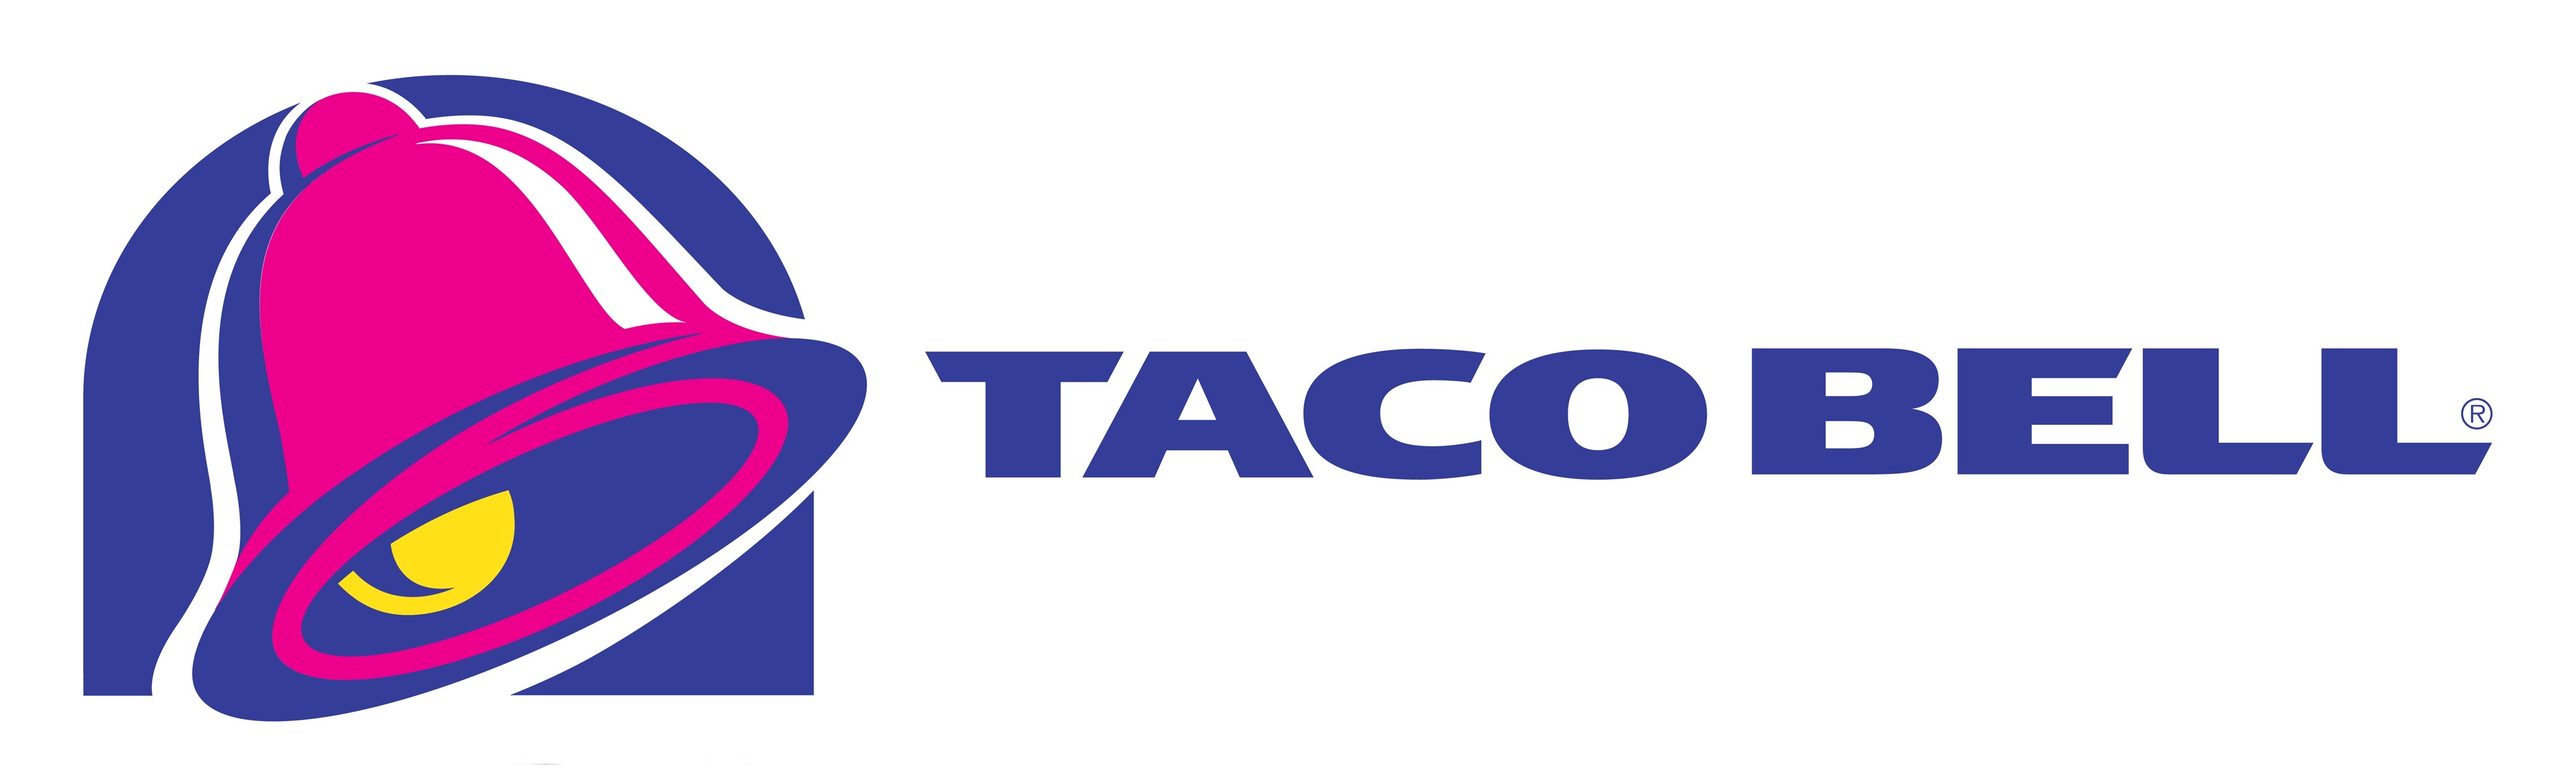 Taco Bell Logo Wallpaper Database